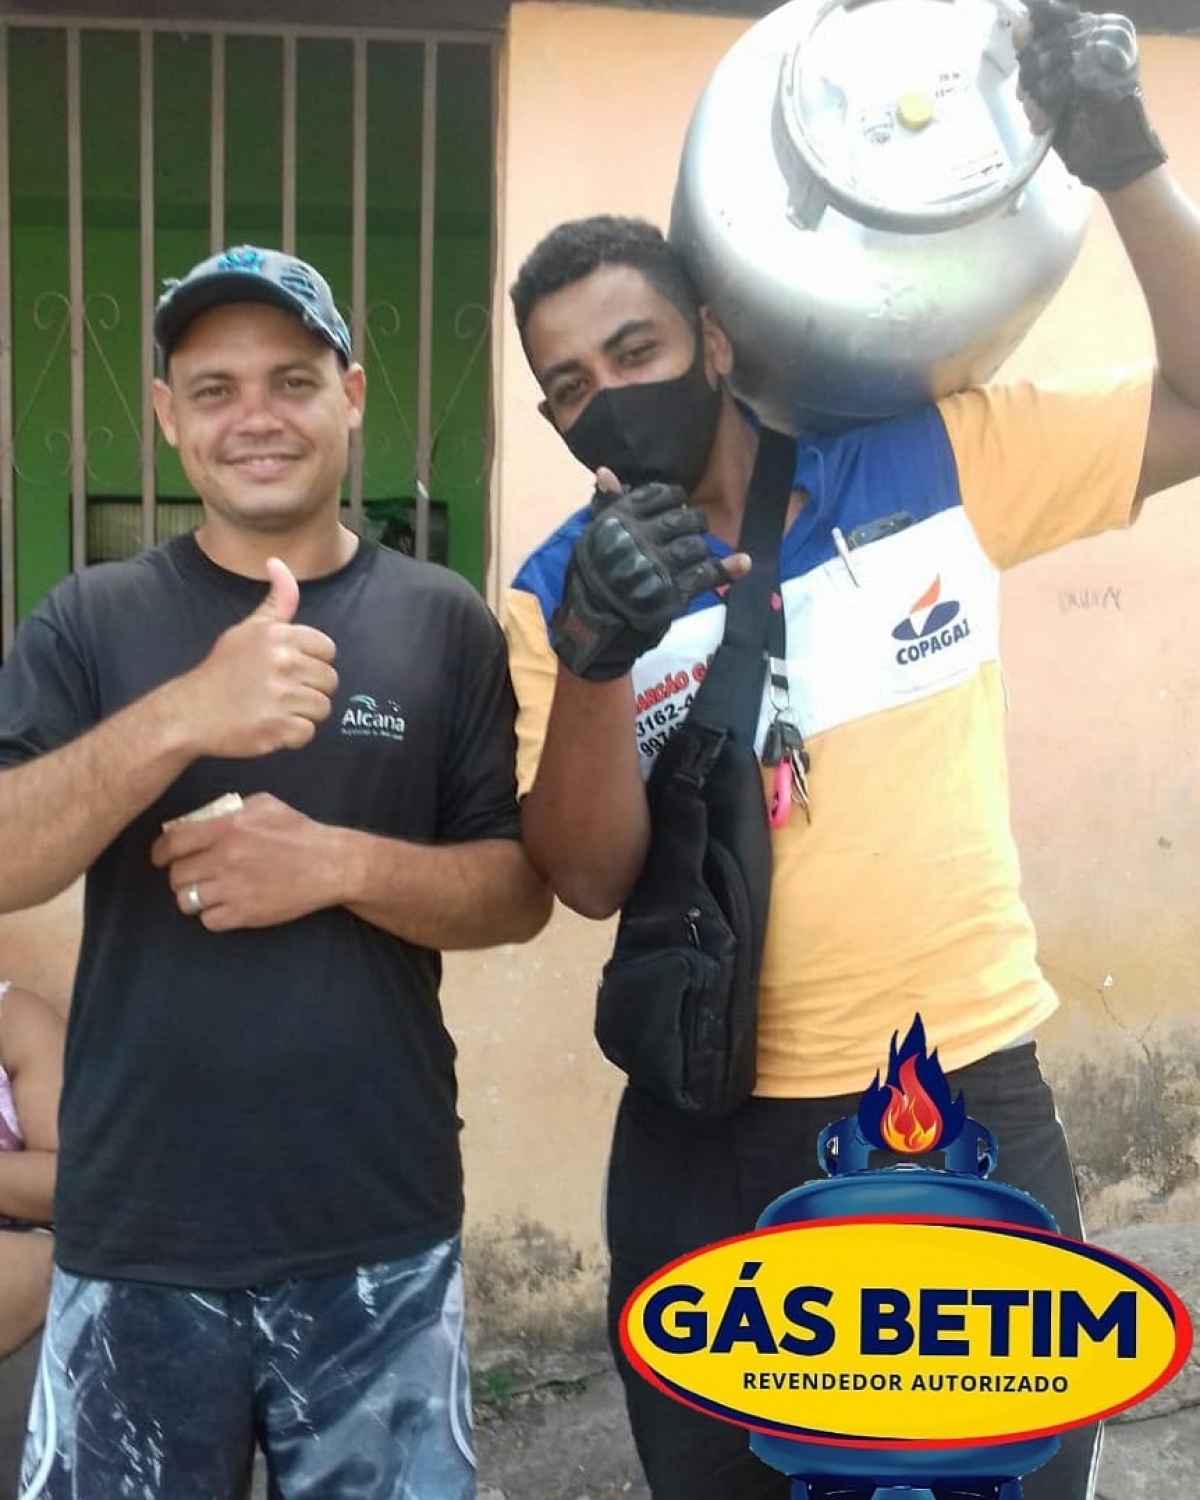 Passo ponto, vendo Revenda de Gás em Betim com grande potencial de ganhos e lucros!